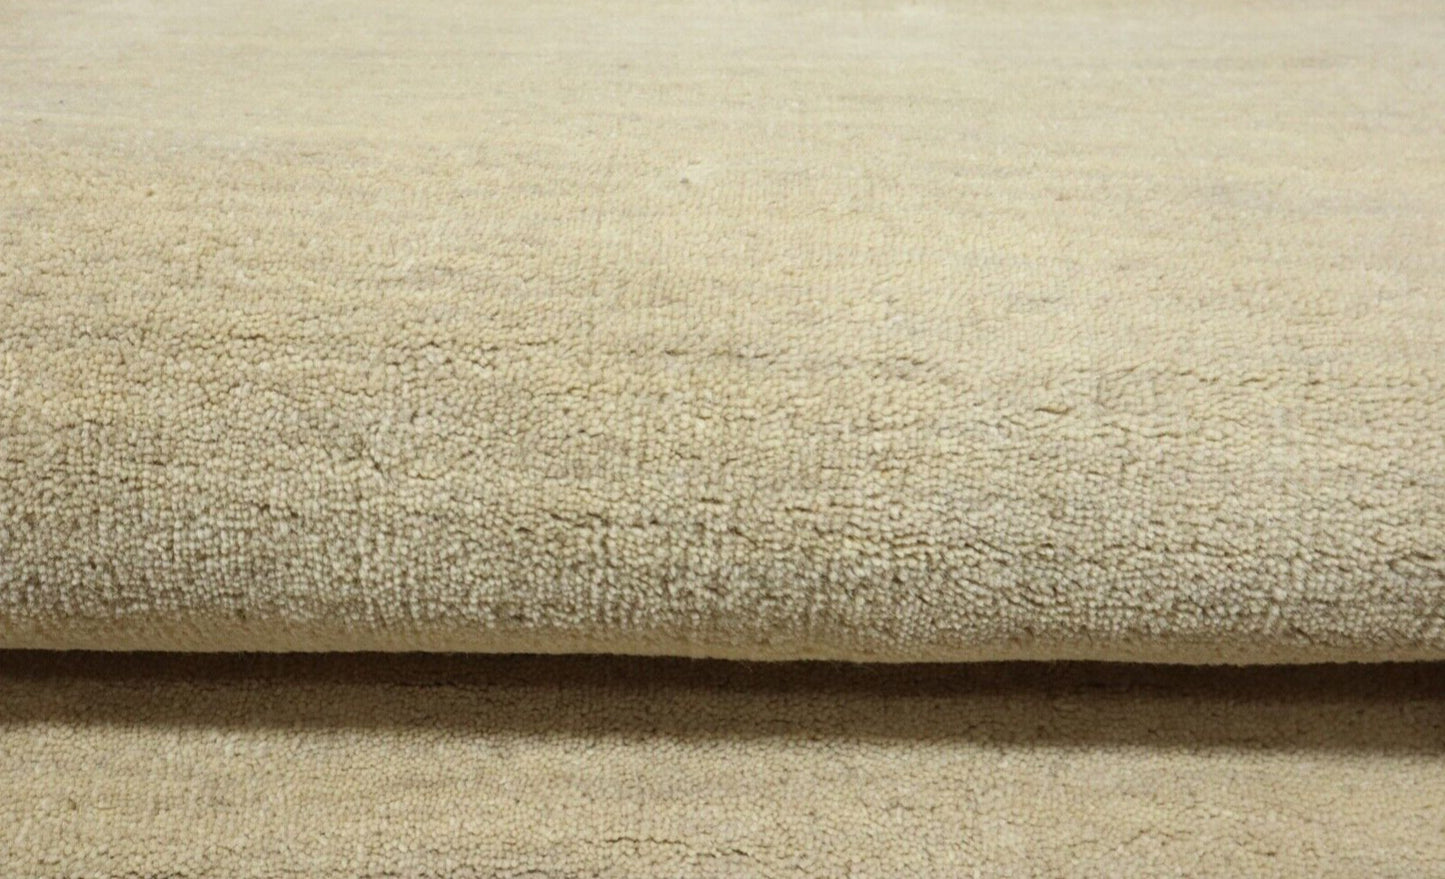 Gabbeh Teppich 100% Wolle 70X140 cm Handarbeit Beige Handgetuftet T1036